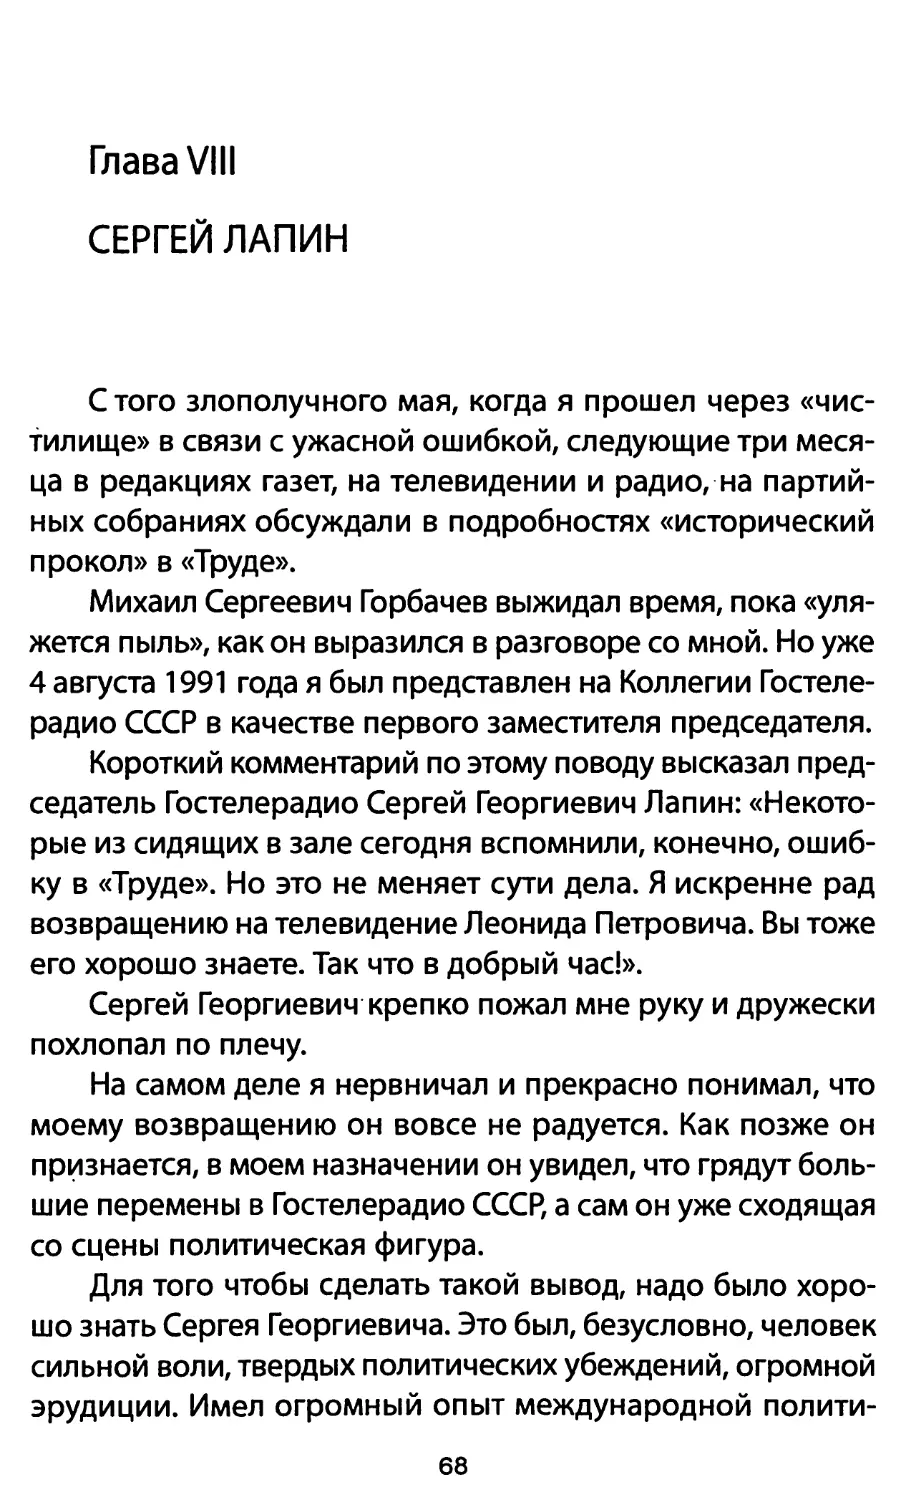 Глава VIII. Сергей Лапин